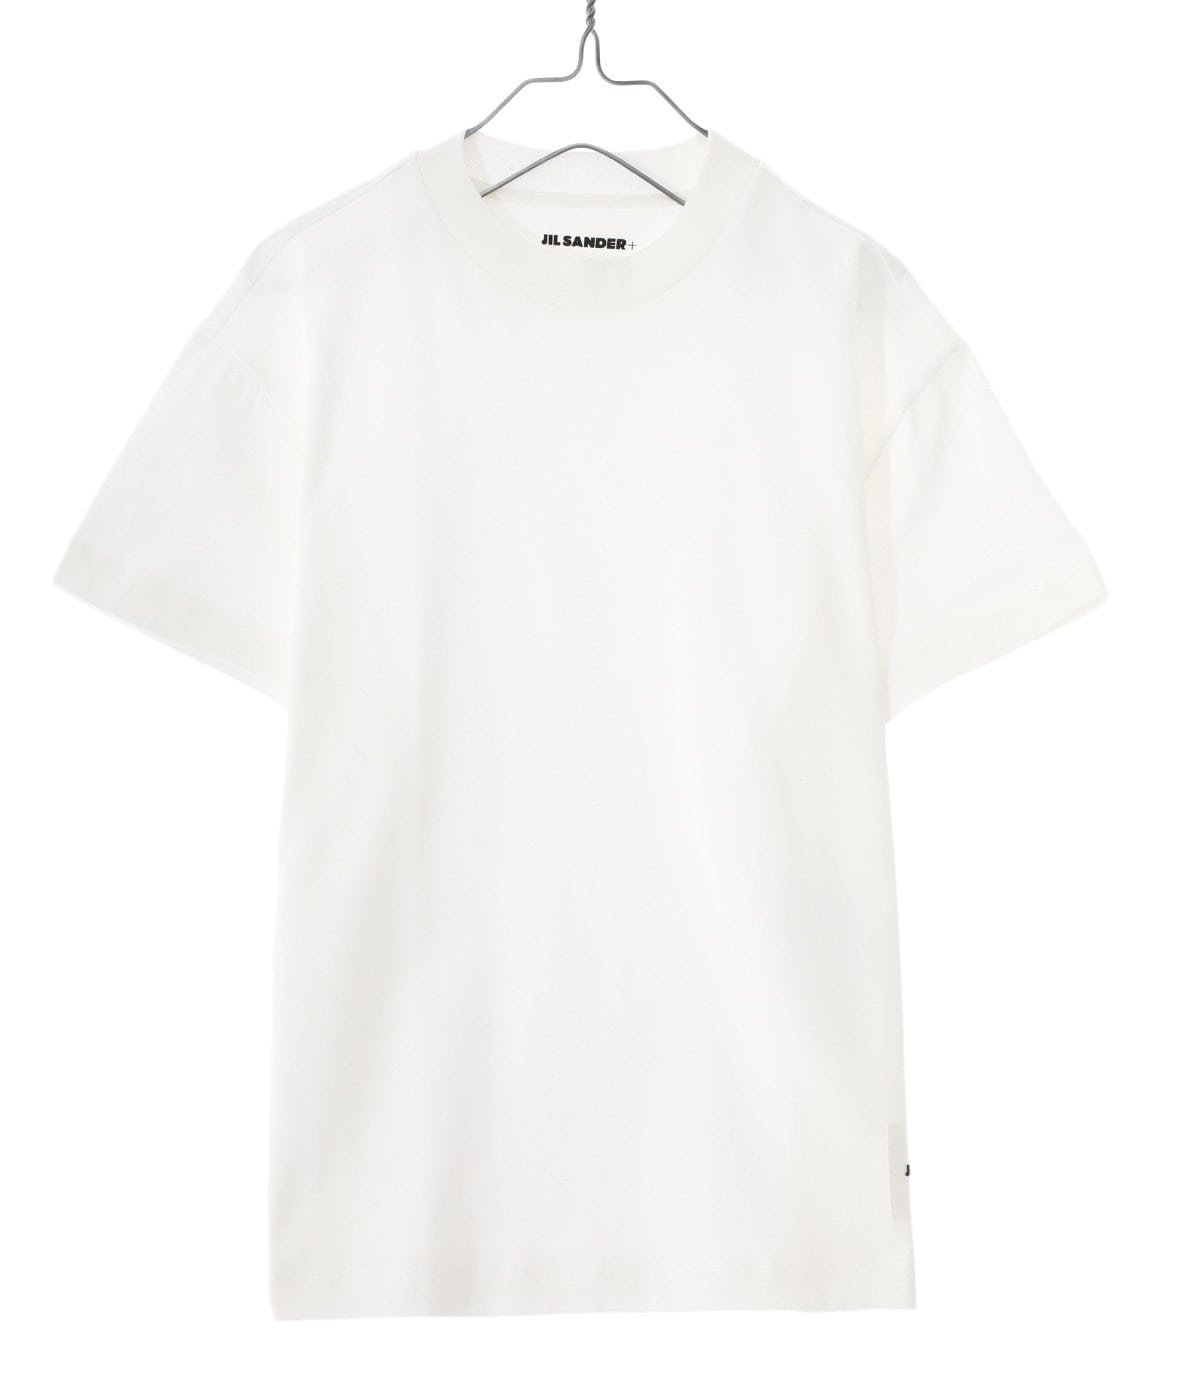 新品未使用サイズL■新品 本物■JIL SANDER 半袖Tシャツ 3枚セット レディース